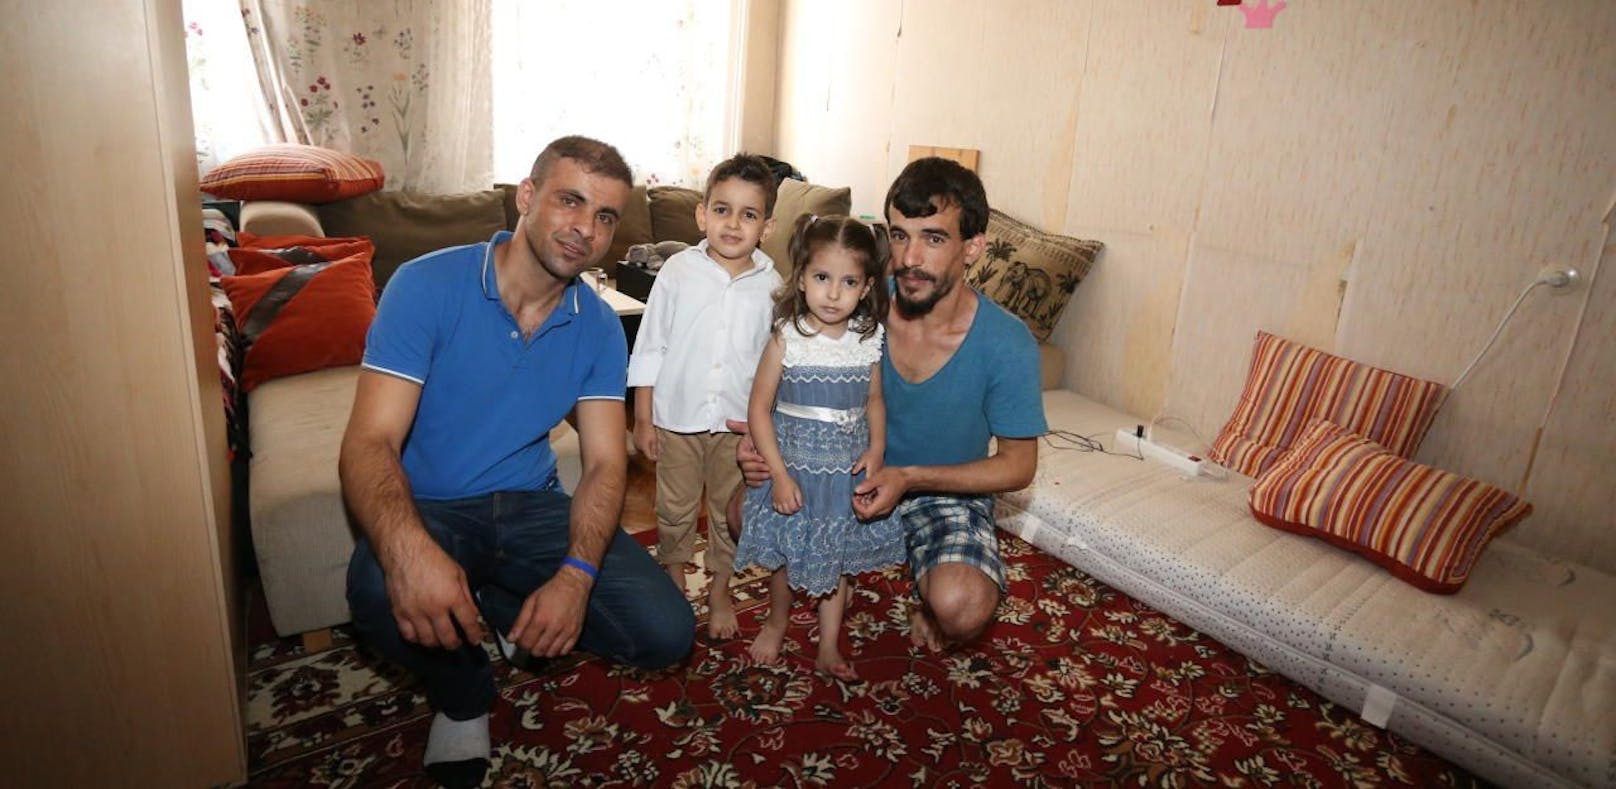 Flüchtlinge in Wohnhaus ohne Strom: "Keiner hilft"